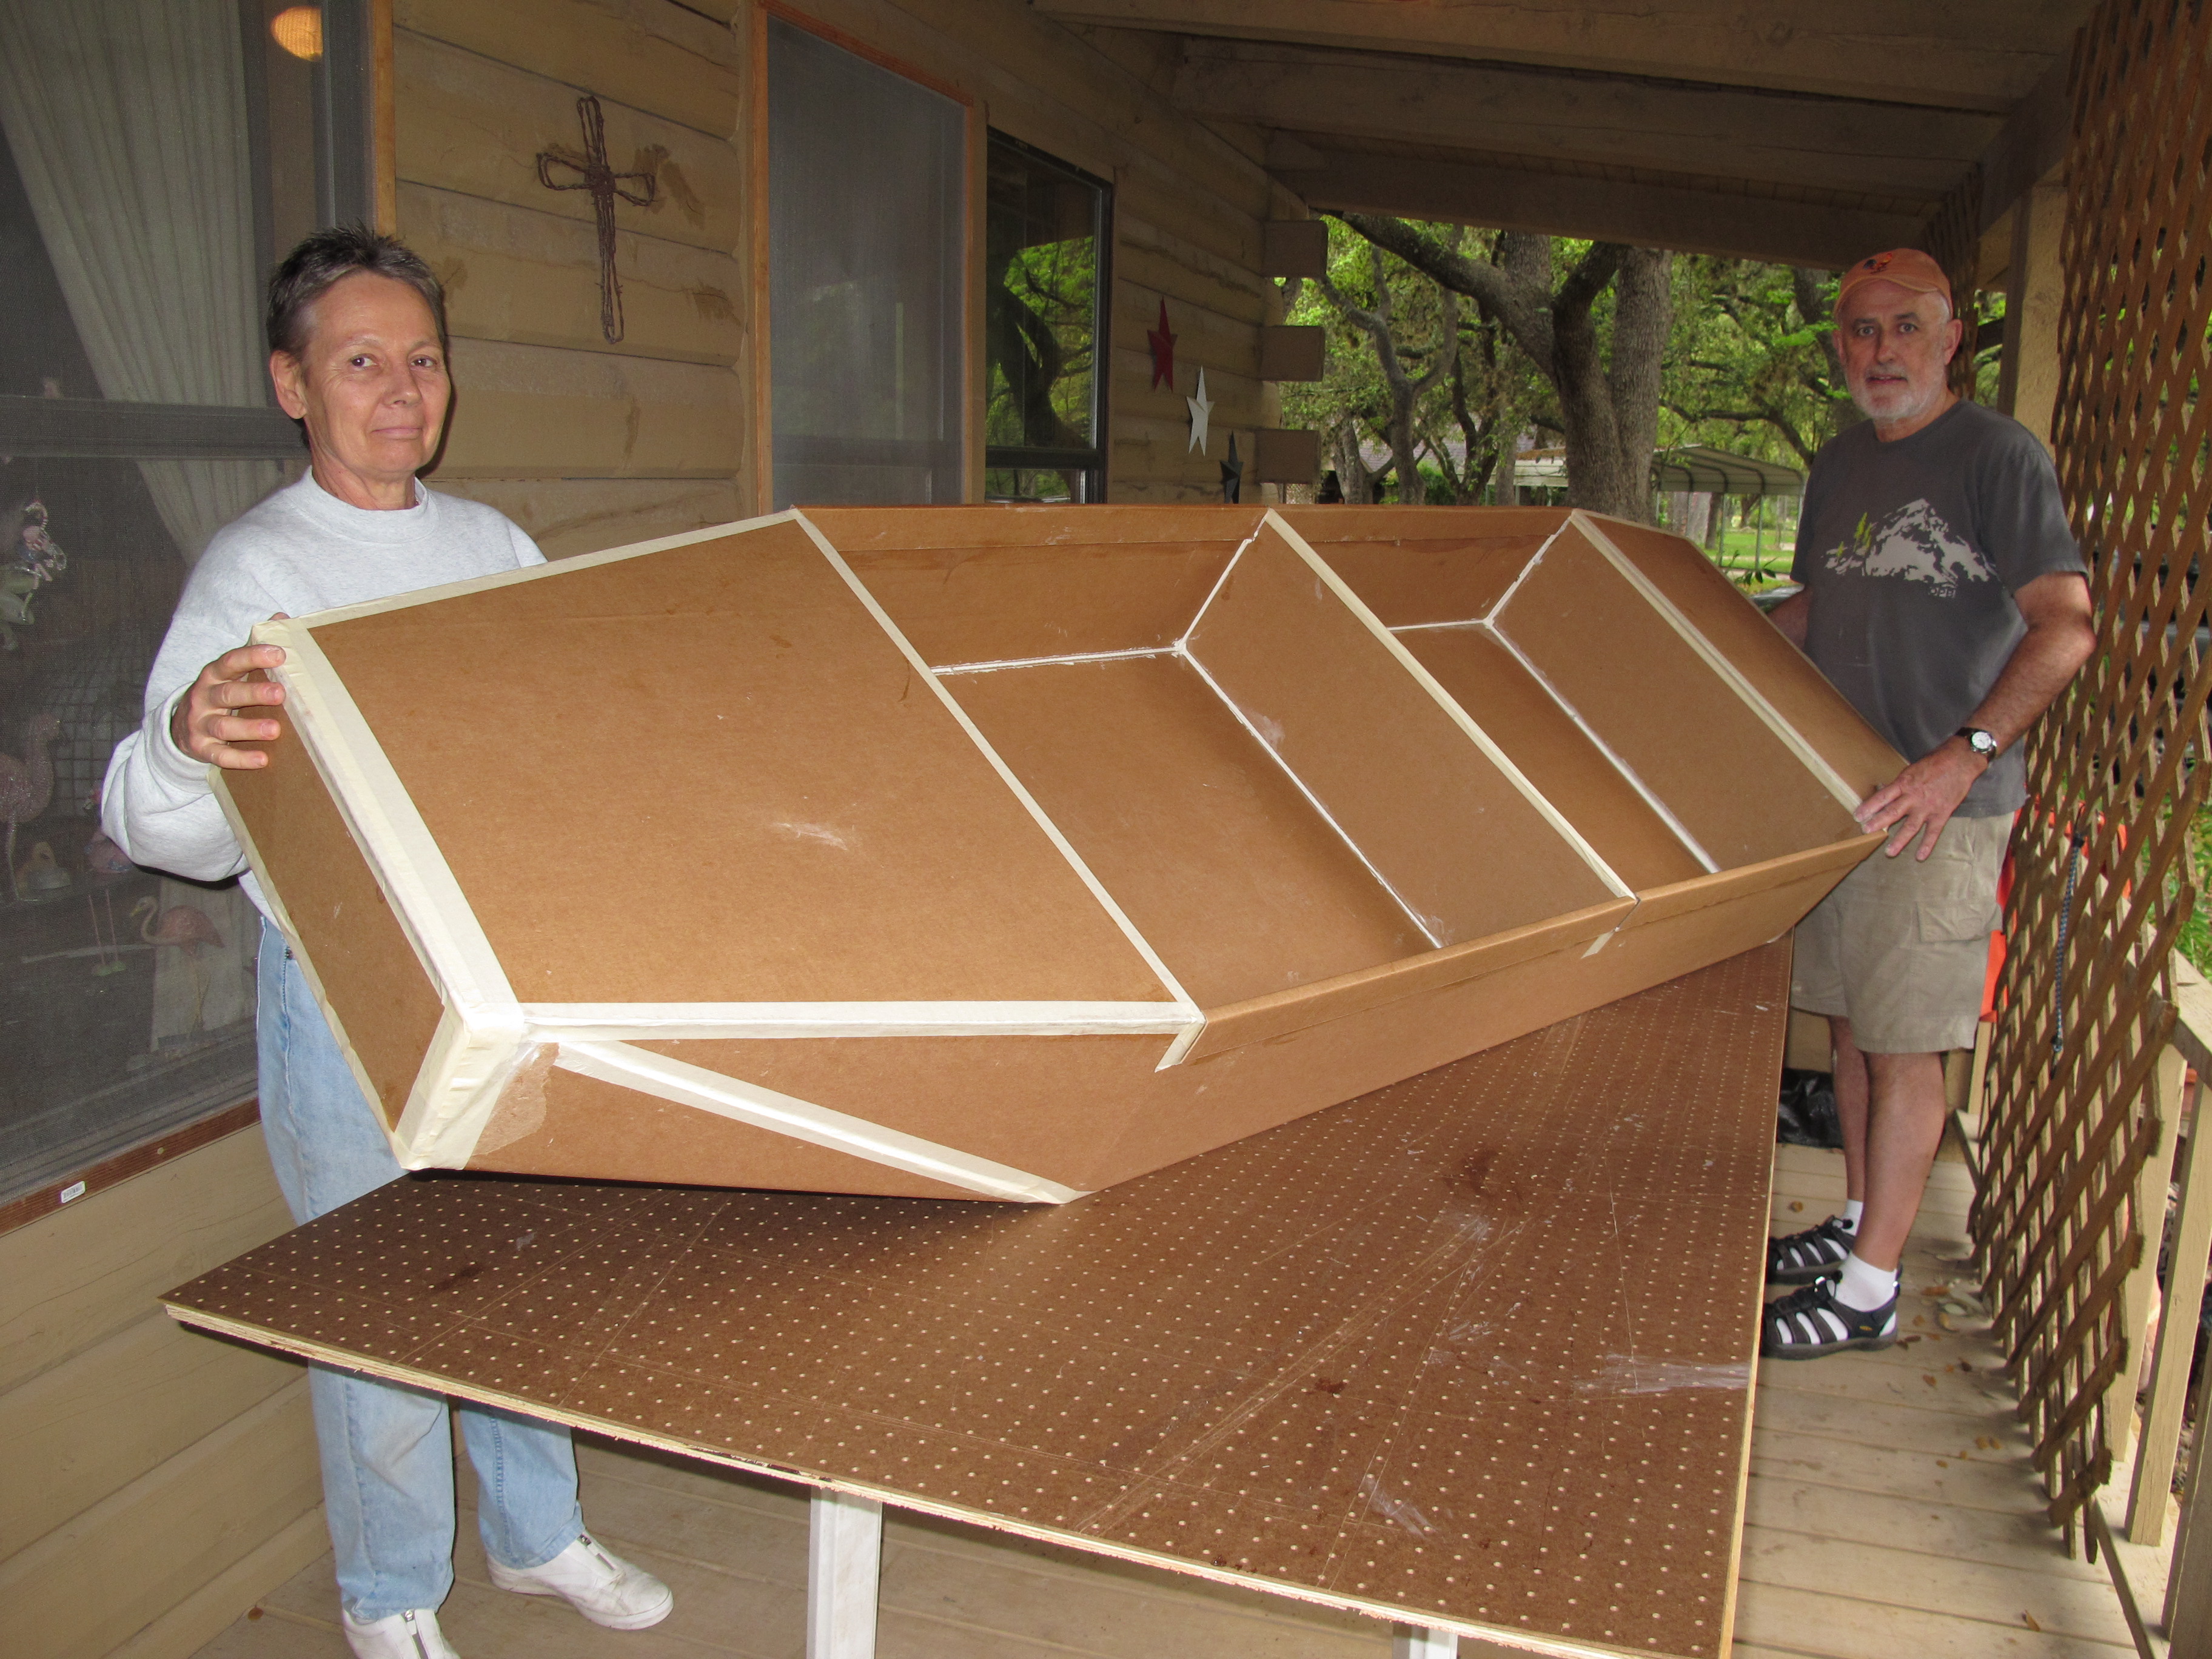 Cardboard boat design challenge  Plan make easy to build boat